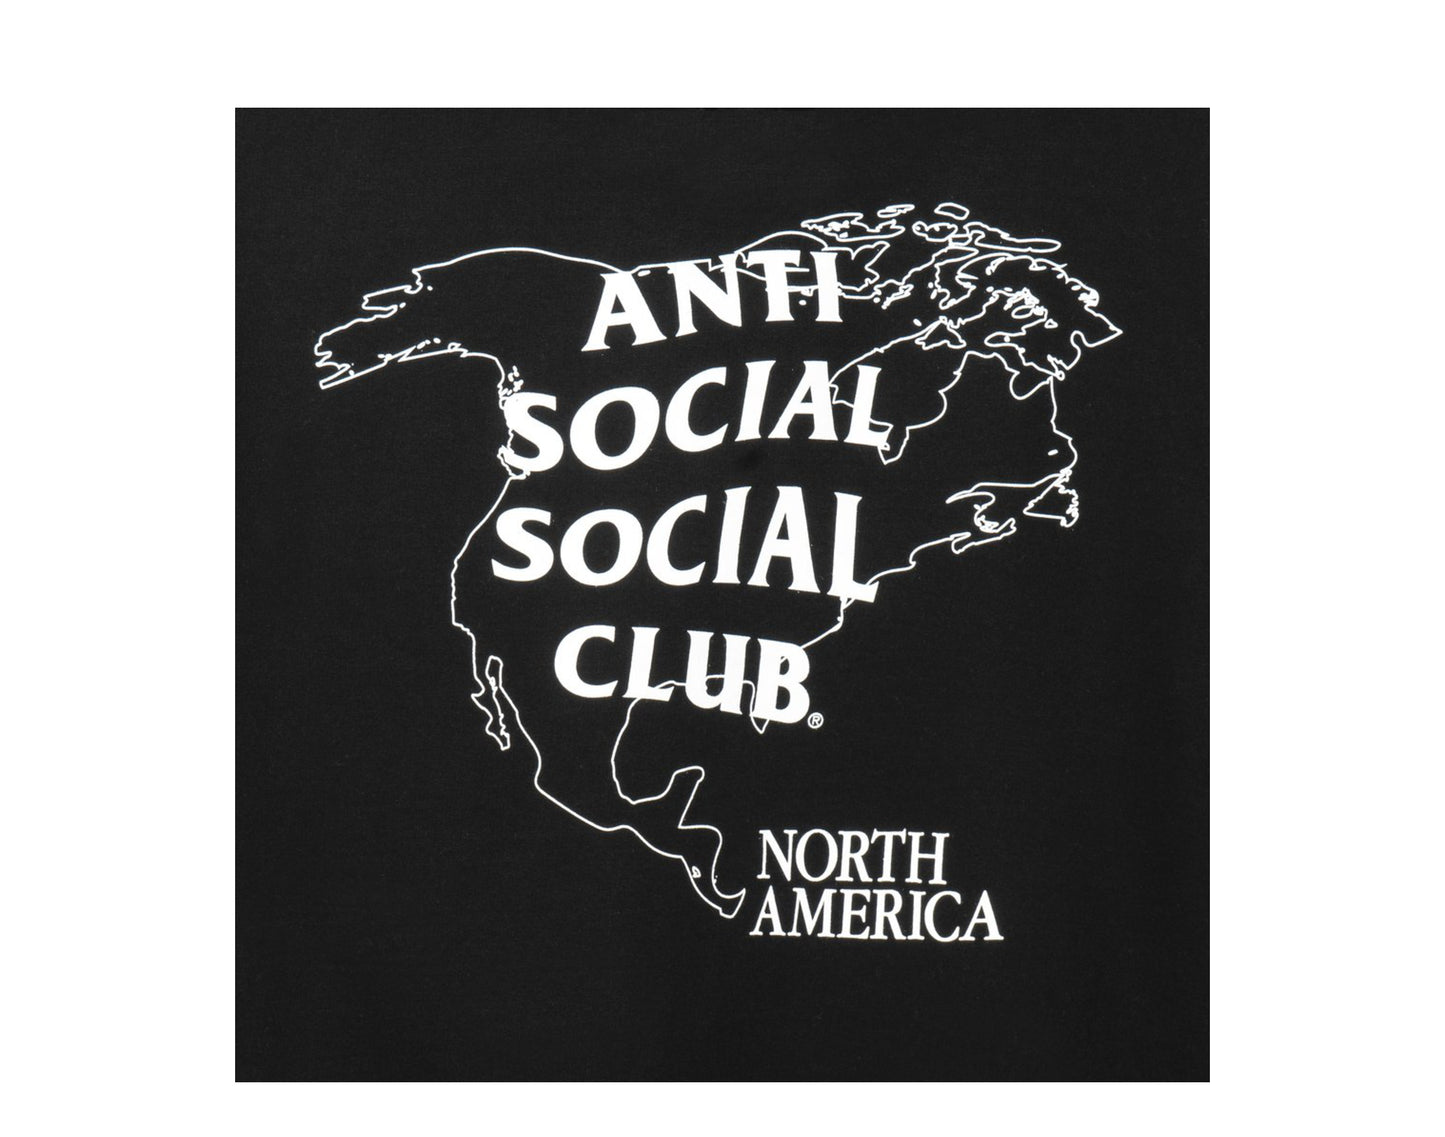 Anti Social Social Club North America Black Hoodie